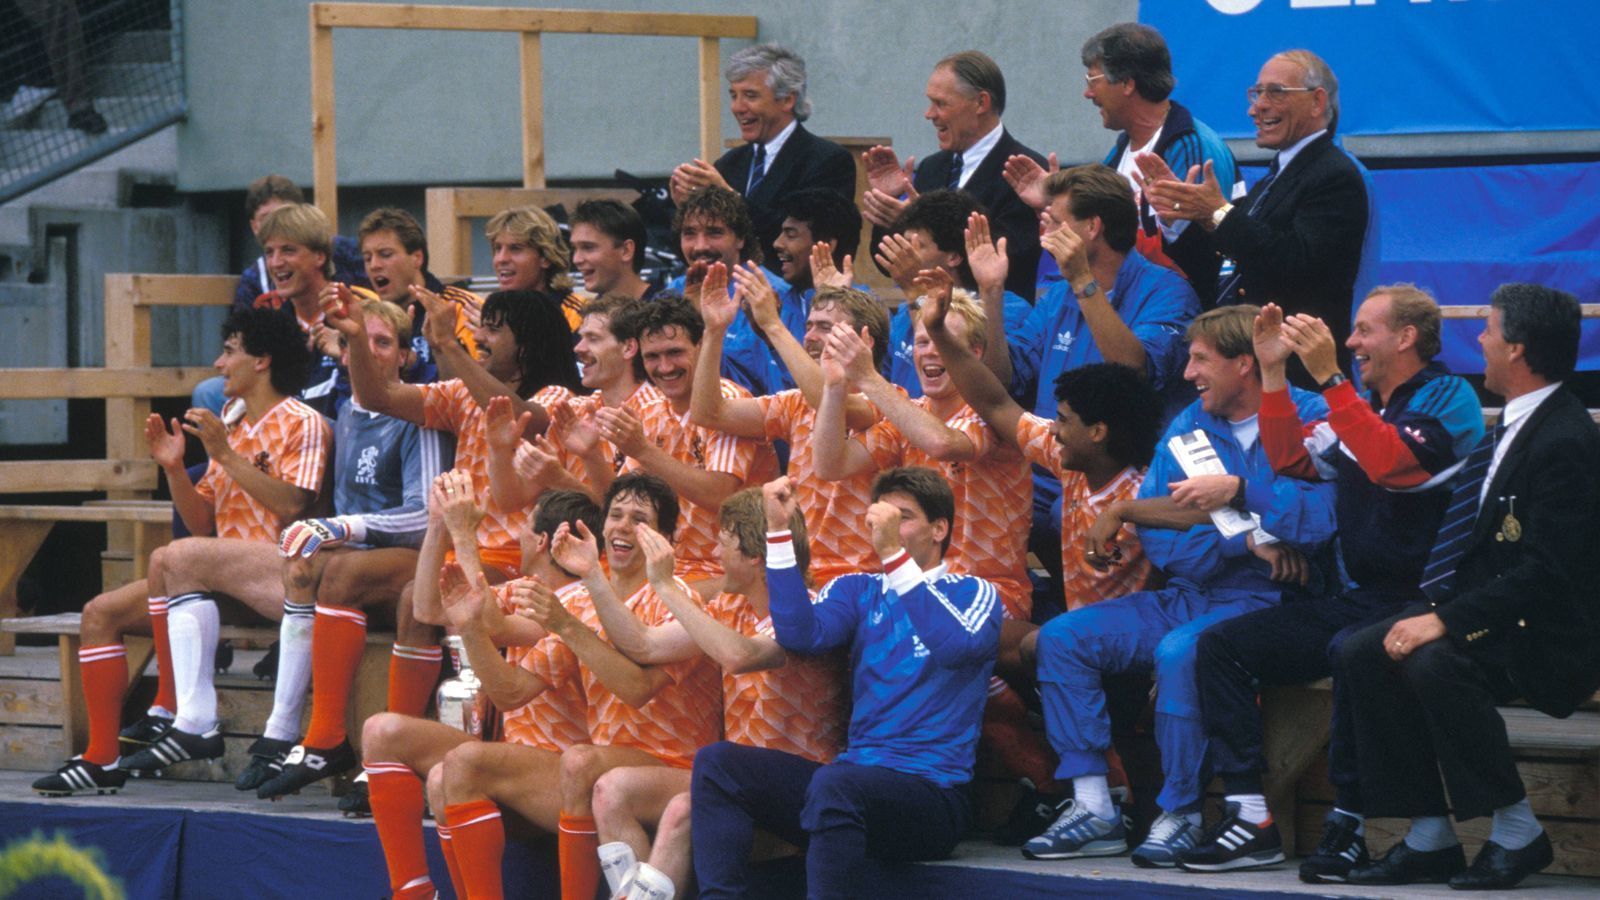 
                <strong>Holland wird Europameister</strong><br>
                Im Endspiel von München gewinnt Oranje mit 2:0 gegen die Sowjetunion und holt seinen ersten und bis heute einzigen großen Titel mit der Nationalmannschaft.
              